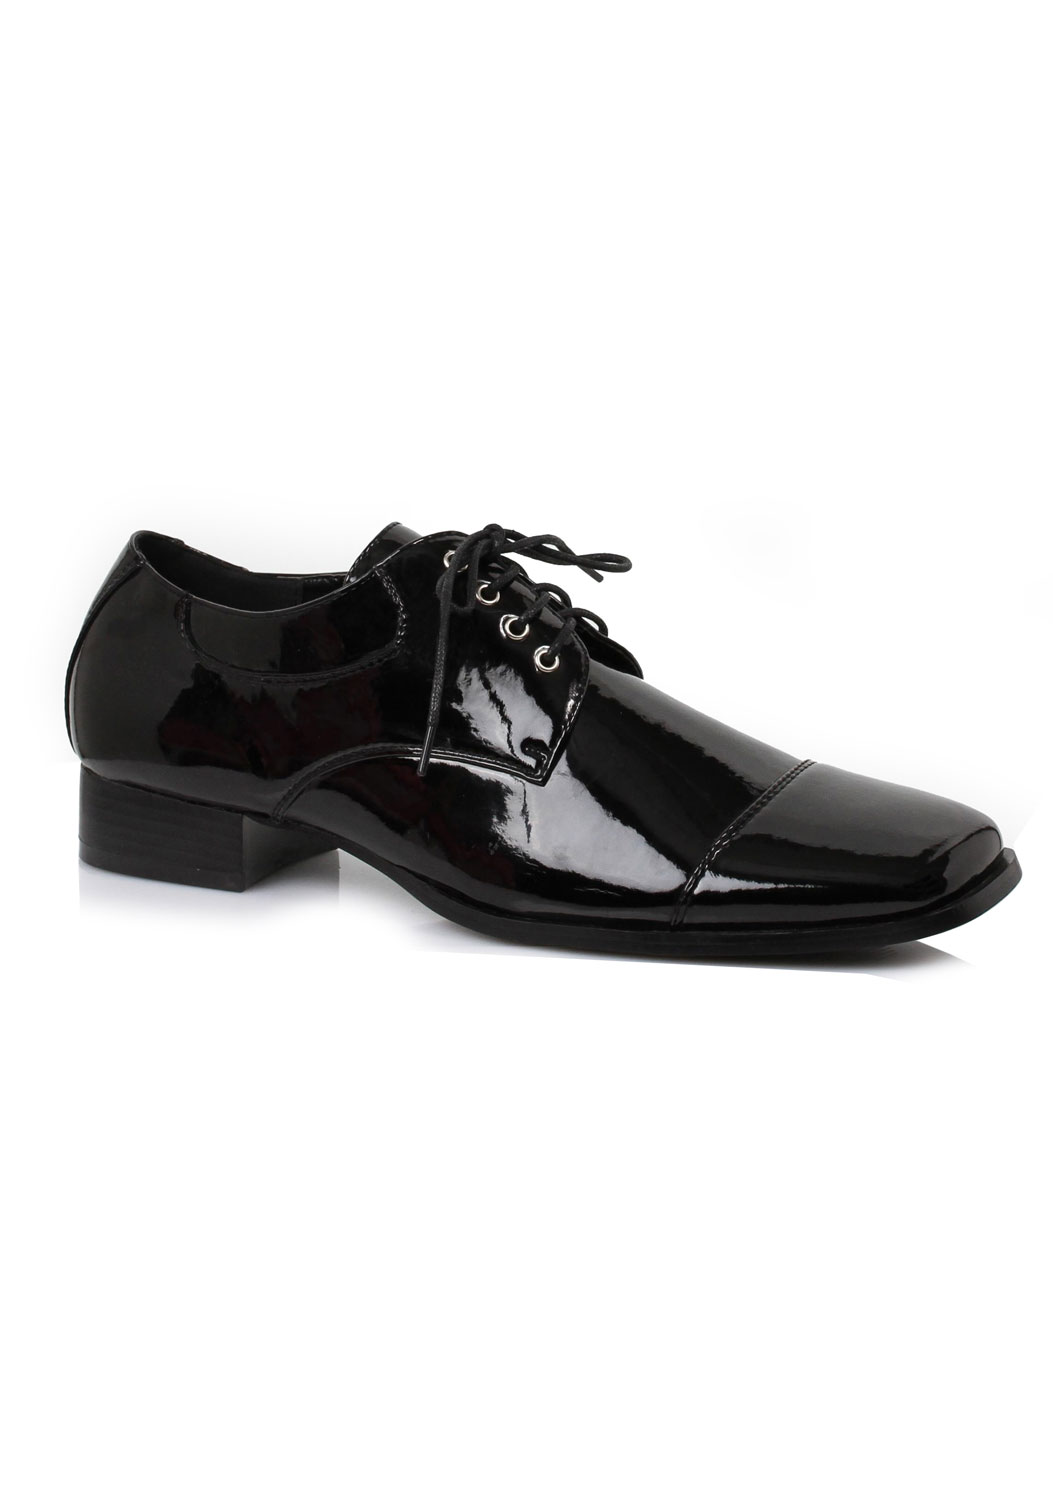 Ellie Shoes 121-AARON Men's 1 Inch Heel Shoe | eBay